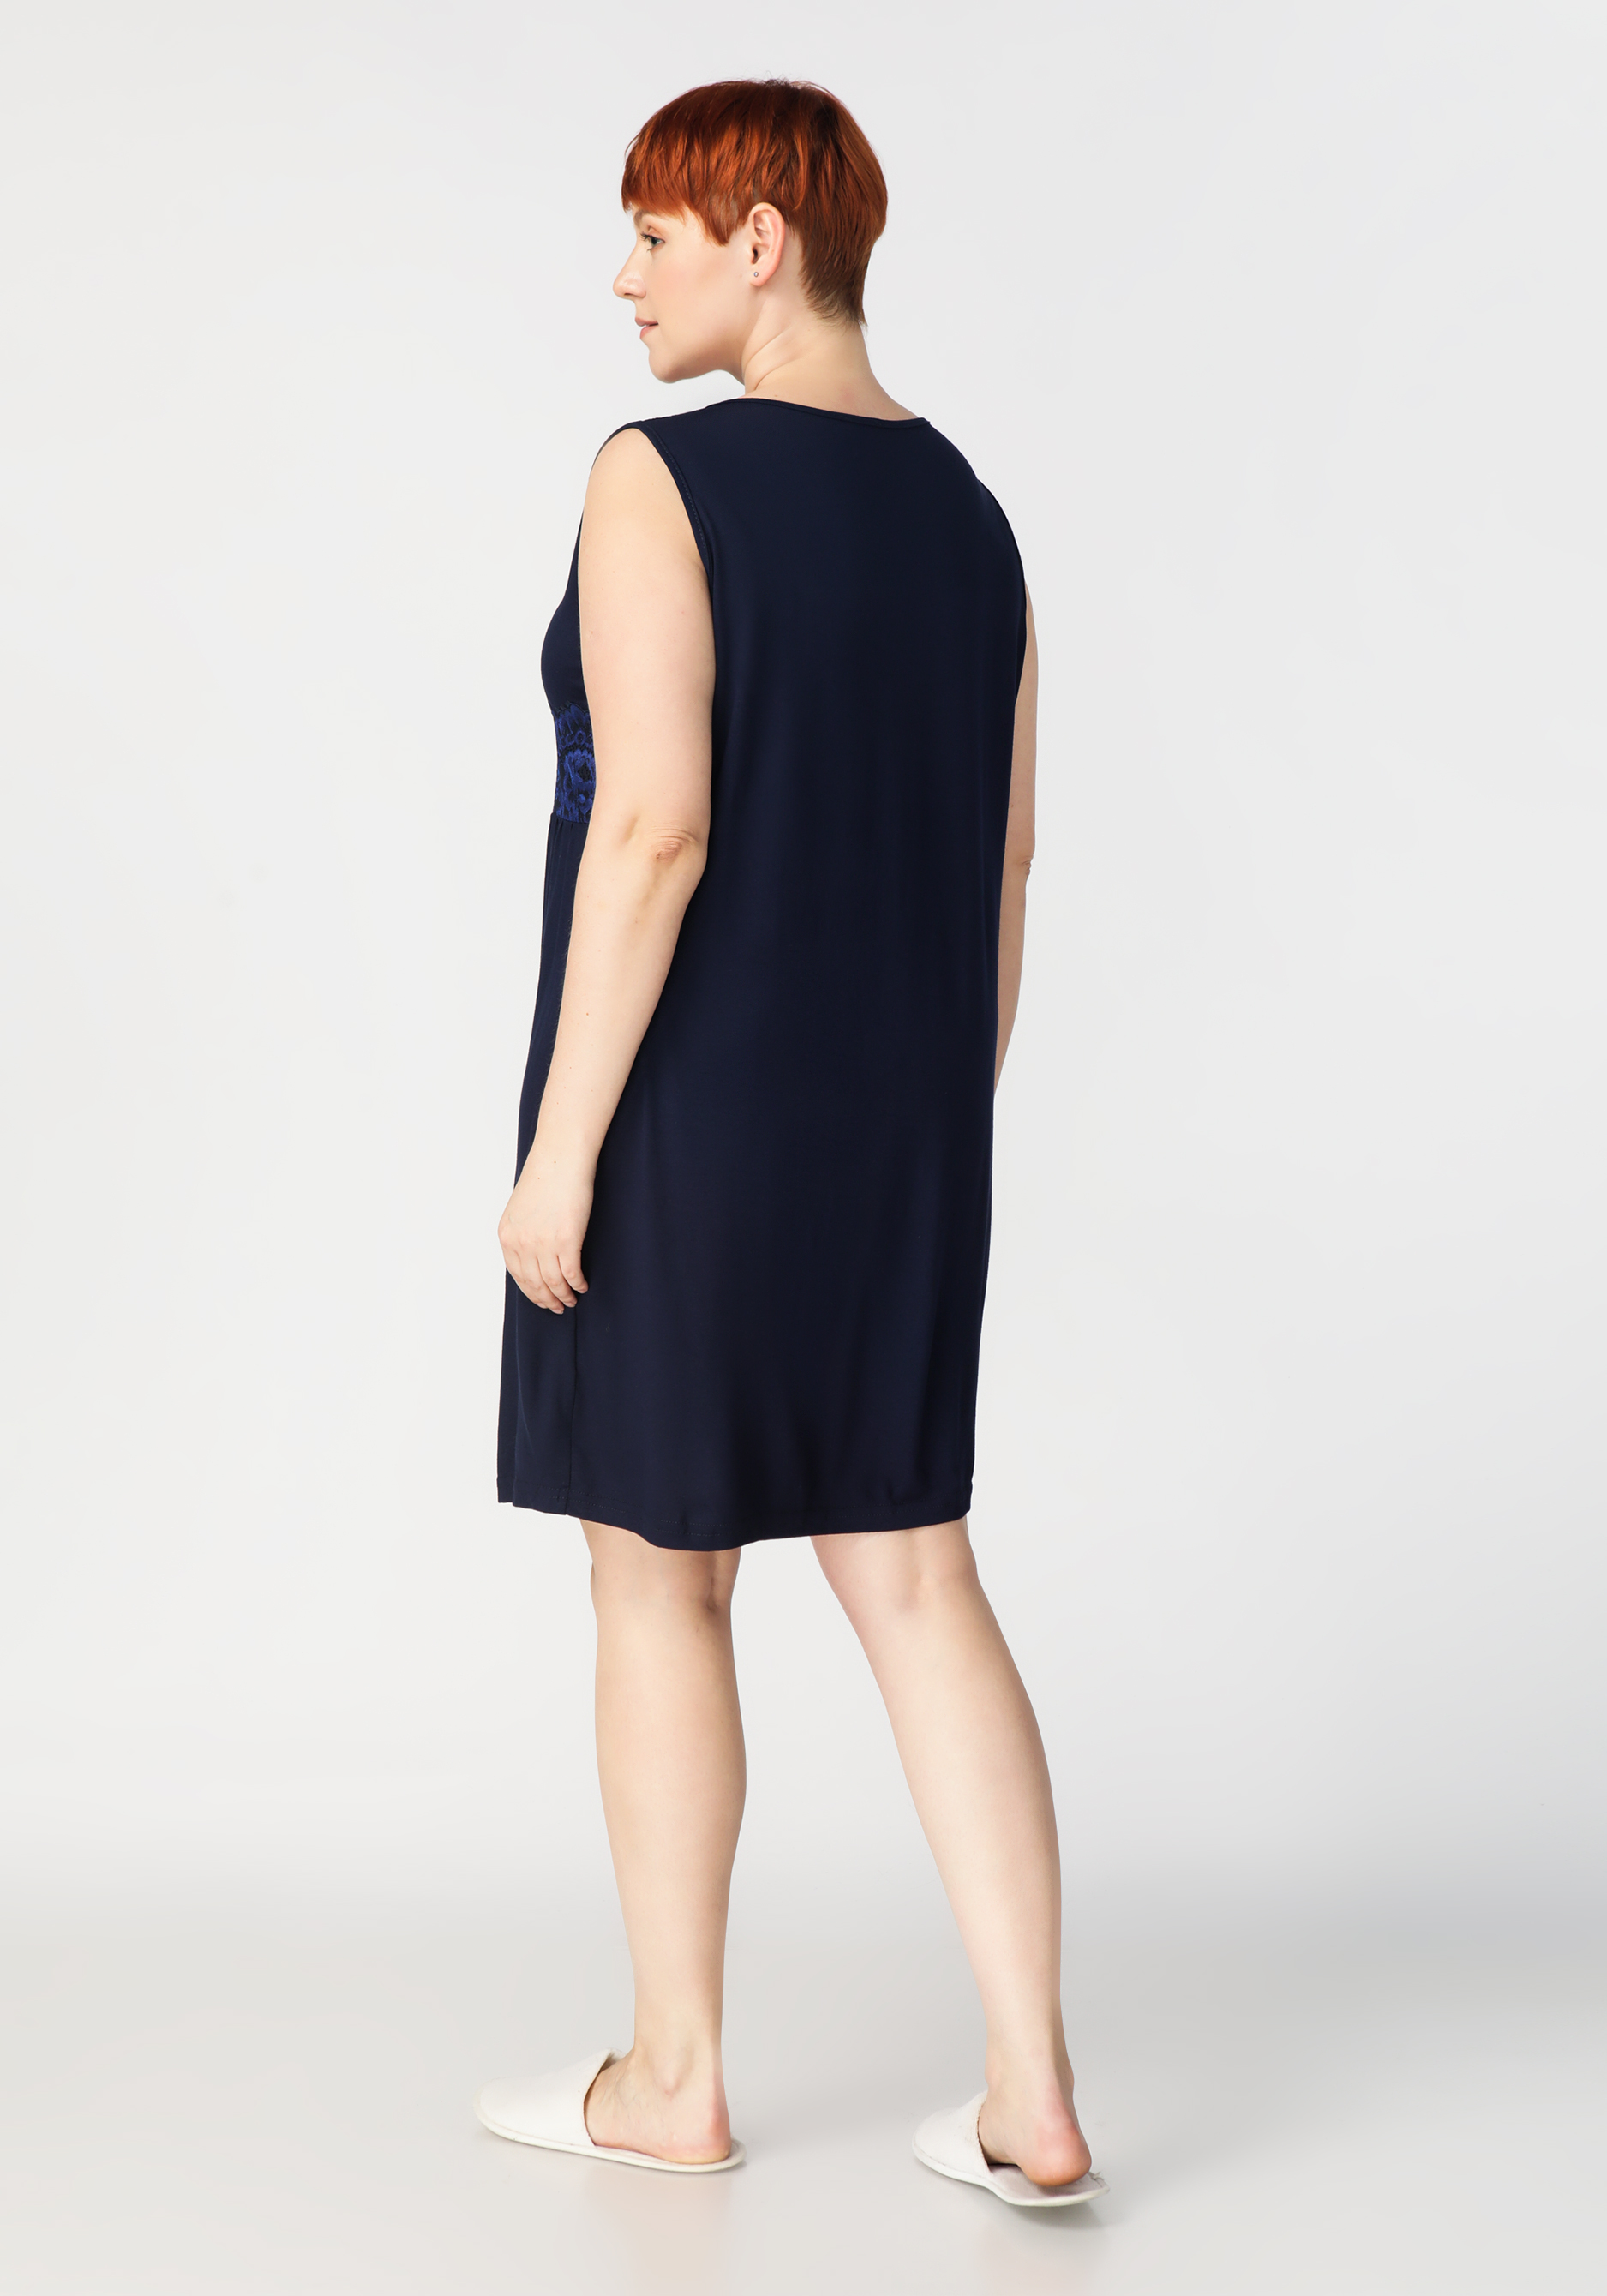 Сорочка женская "Эльза" NATALI, размер 48, цвет синий - фото 7